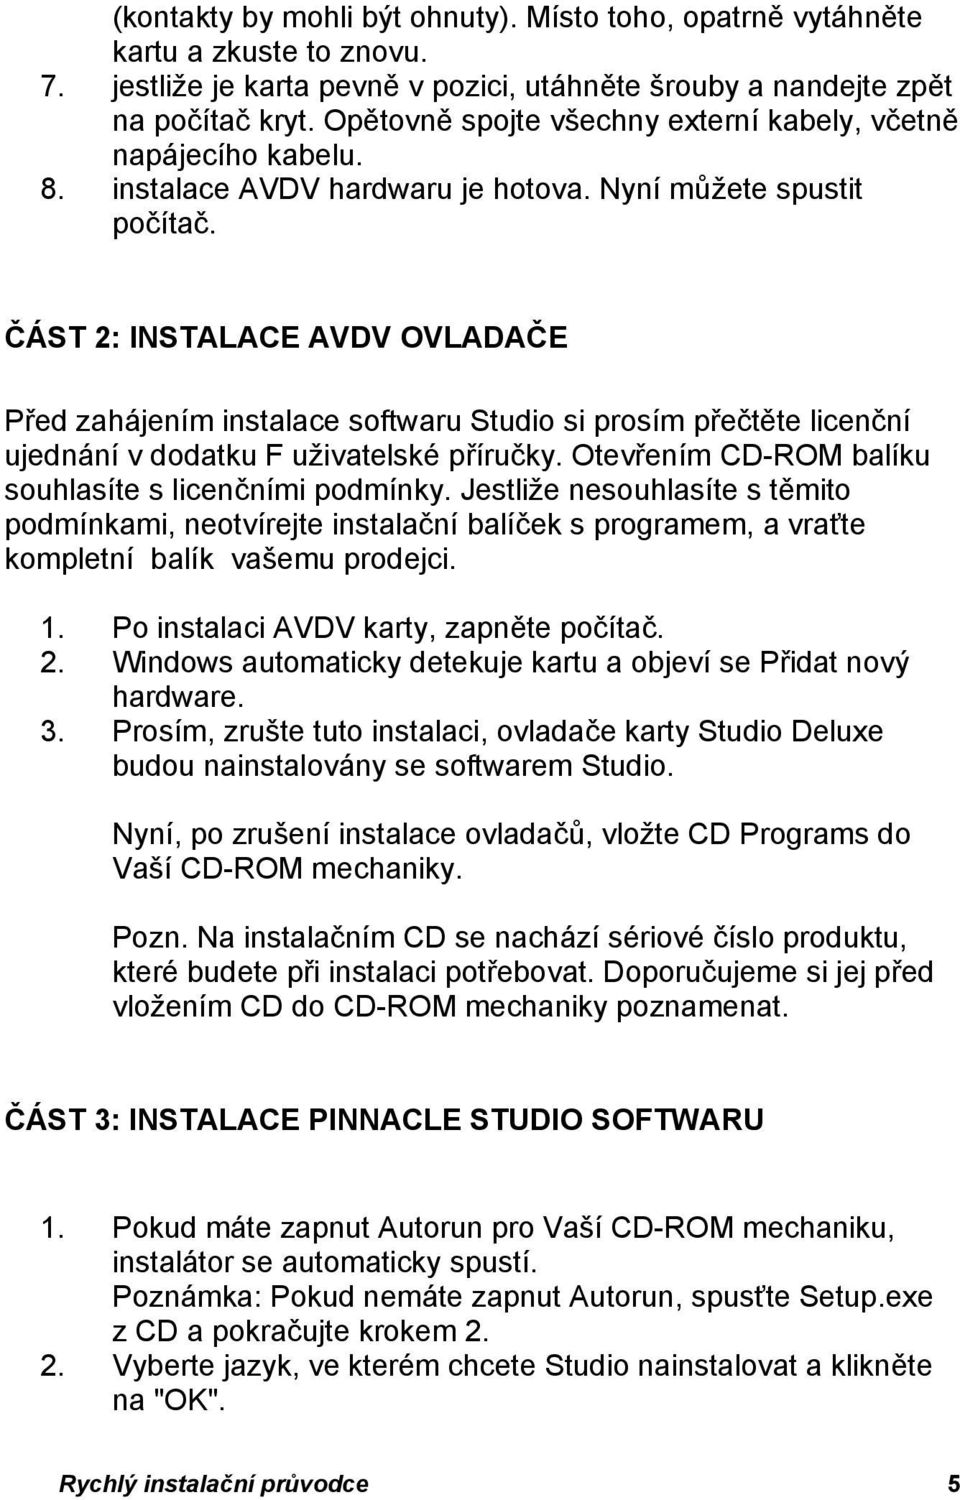 ČÁST 2: INSTALACE AVDV OVLADAČE Před zahájením instalace softwaru Studio si prosím přečtěte licenční ujednání v dodatku F uživatelské příručky.